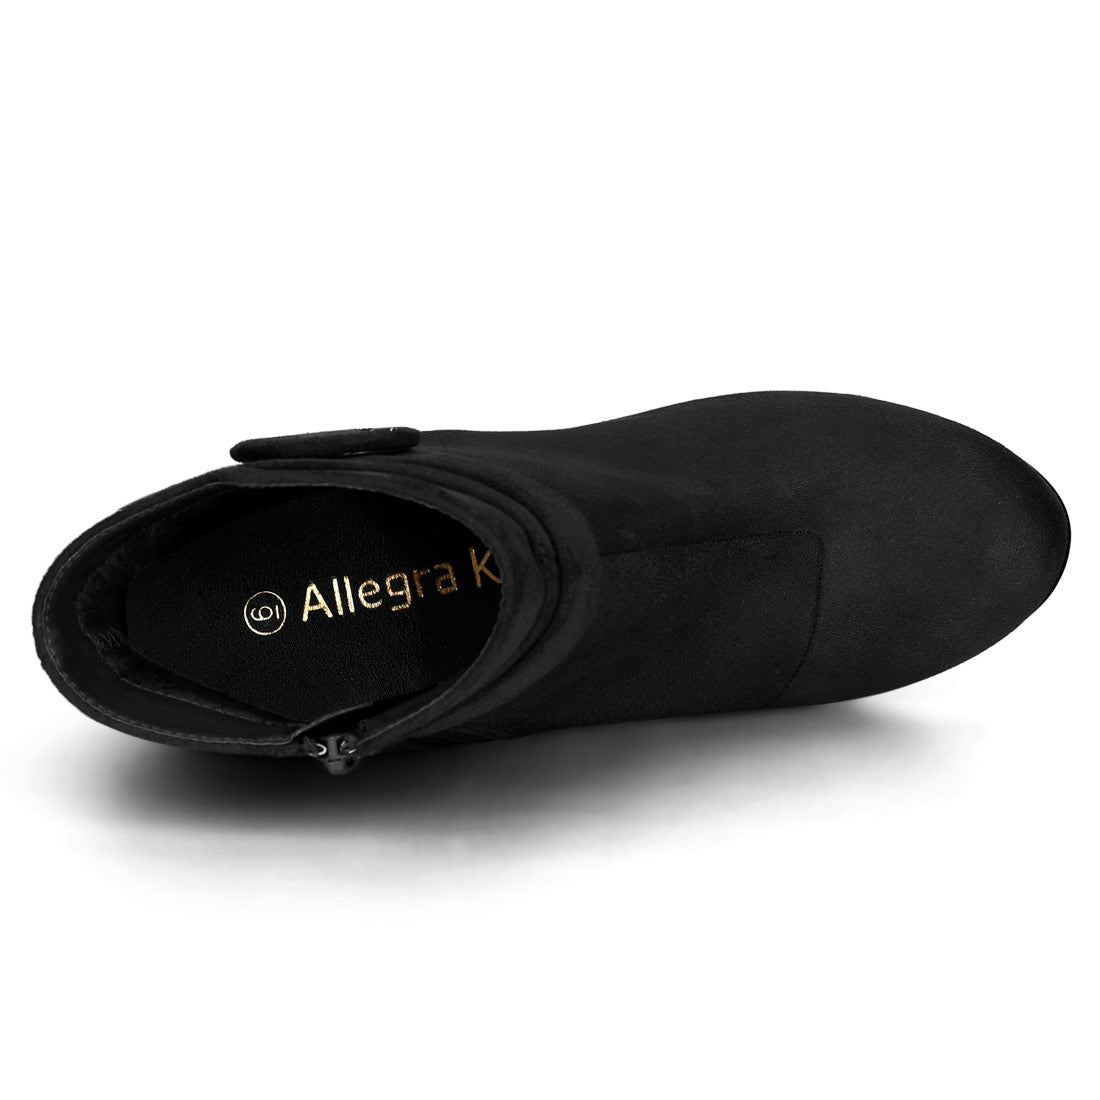 Allegra K Round Toe Block Heel Boots Ankle Booties